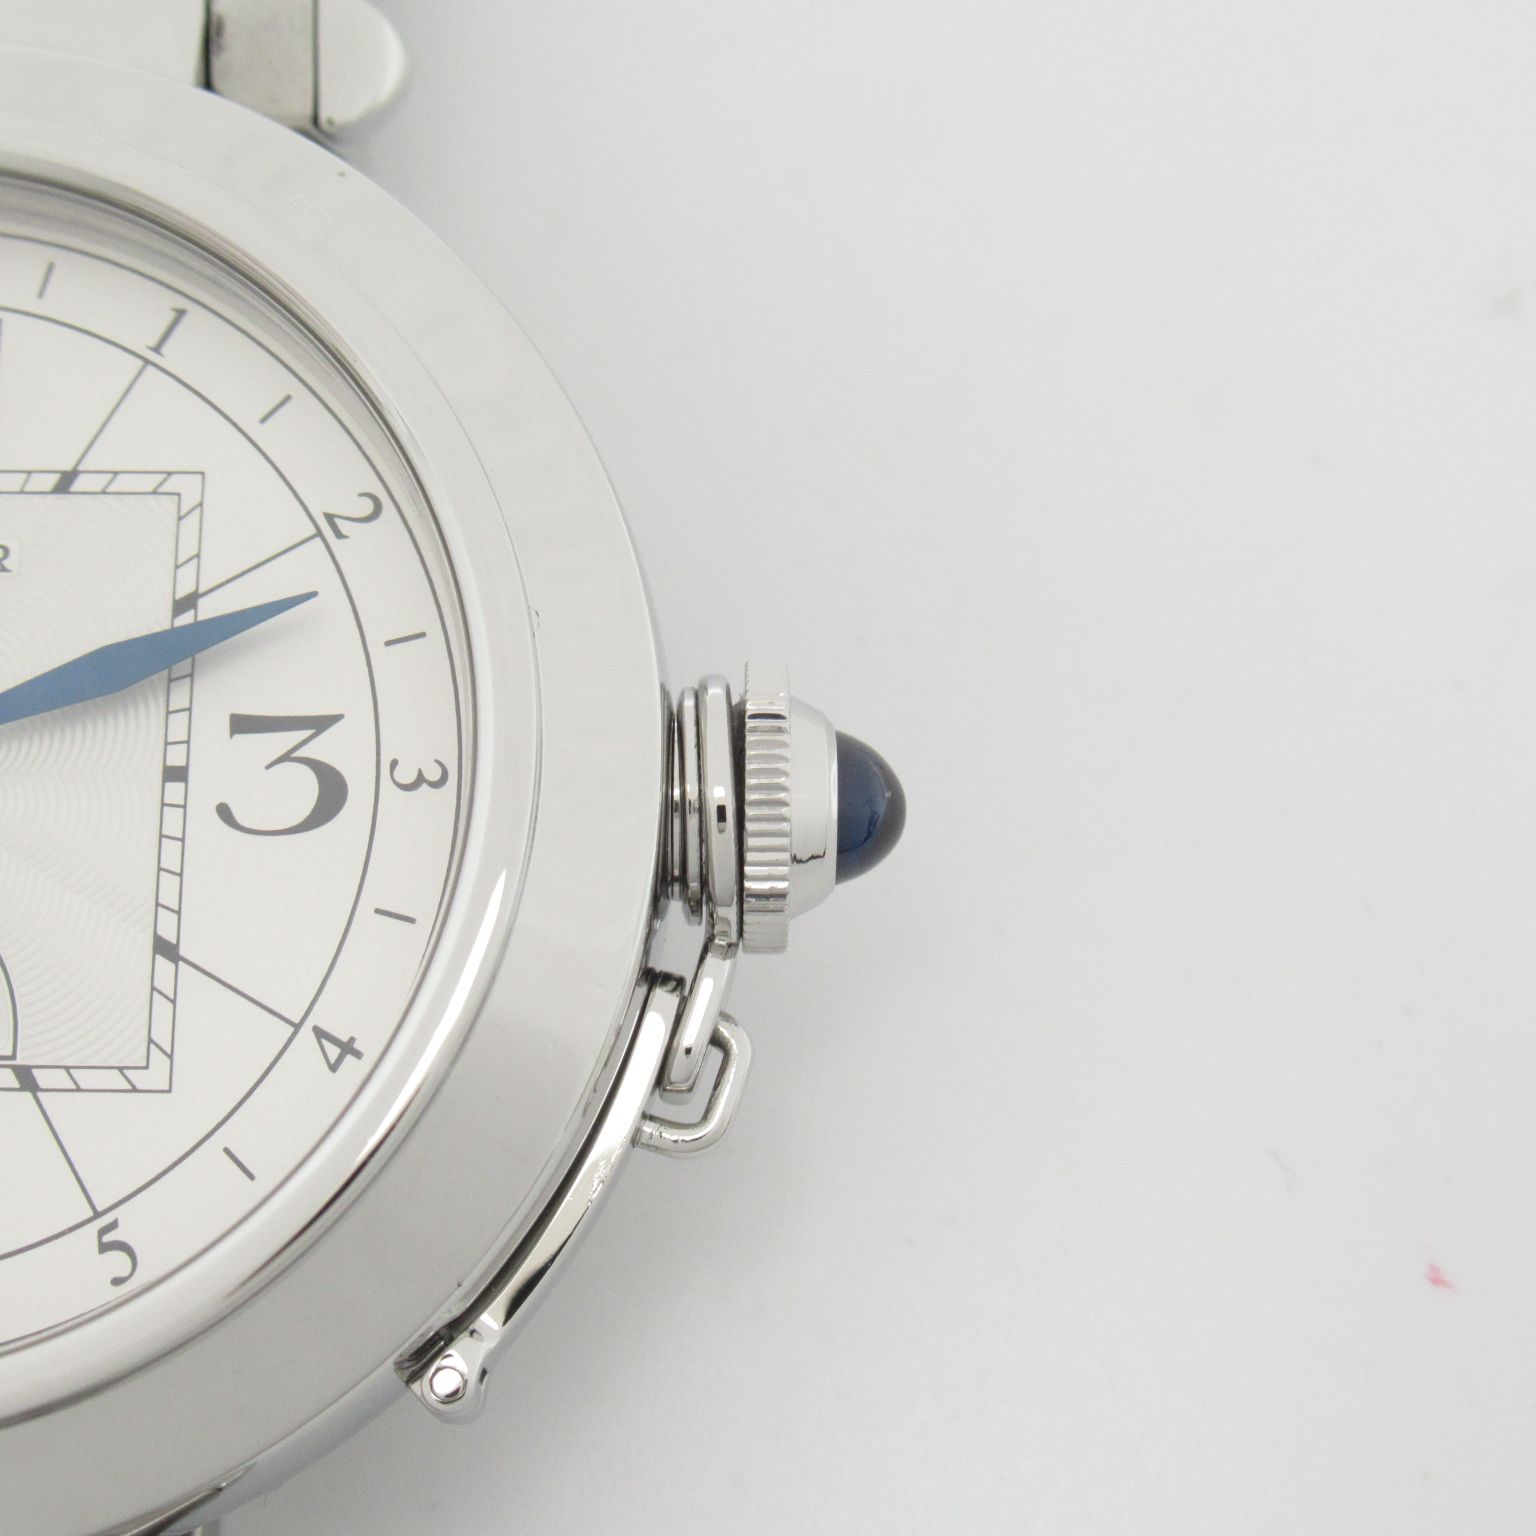 カルティエ パシャXL ナイト&デイ 腕時計 ウォッチ 腕時計